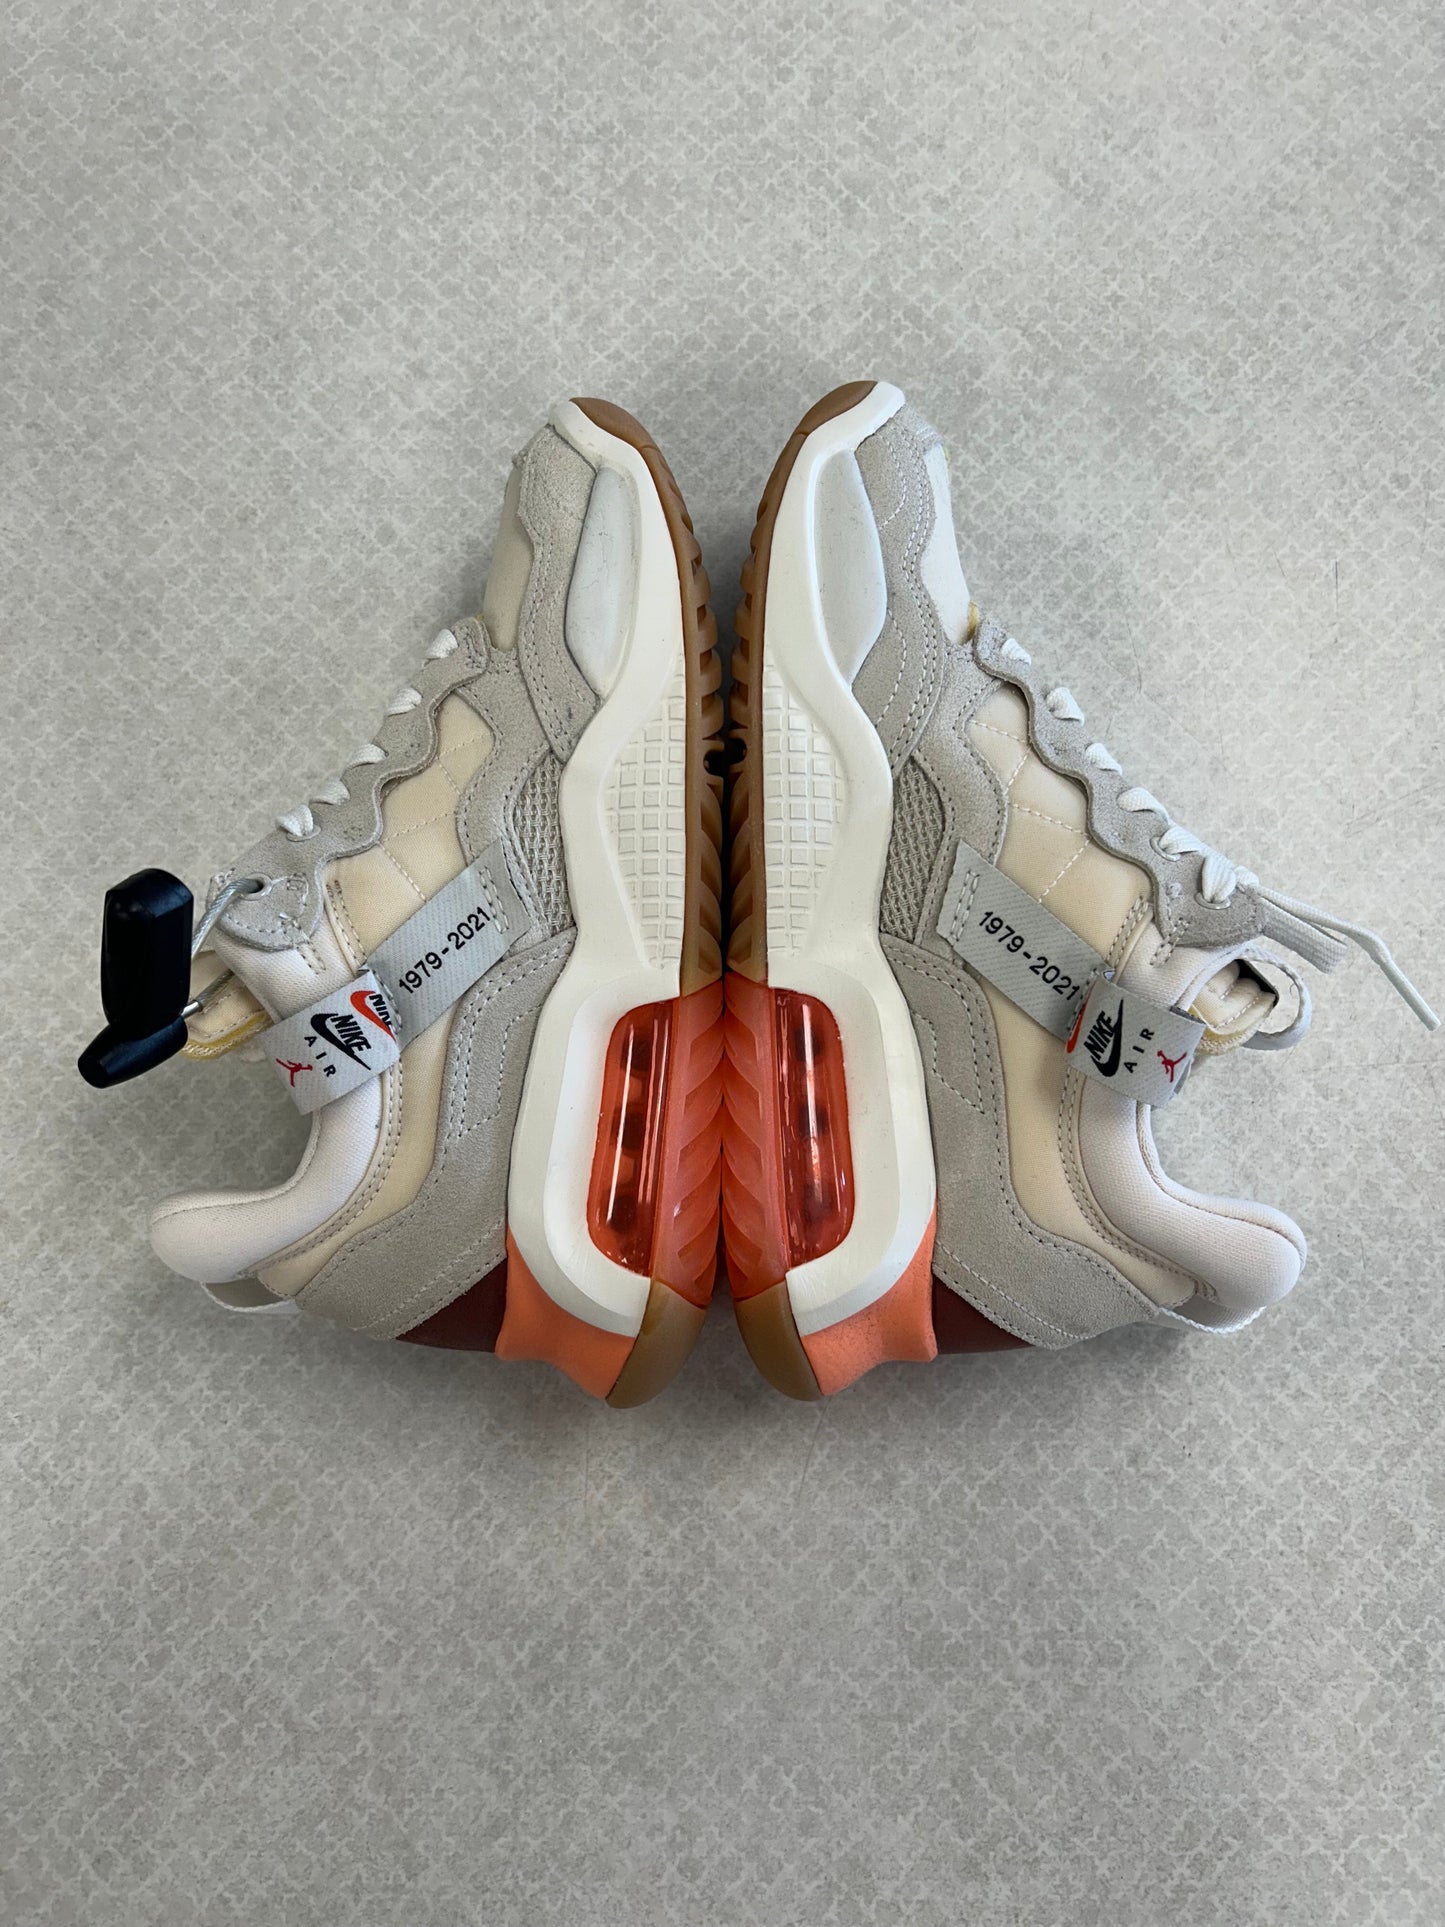 White Shoes Sneakers Jordan, Size 6.5